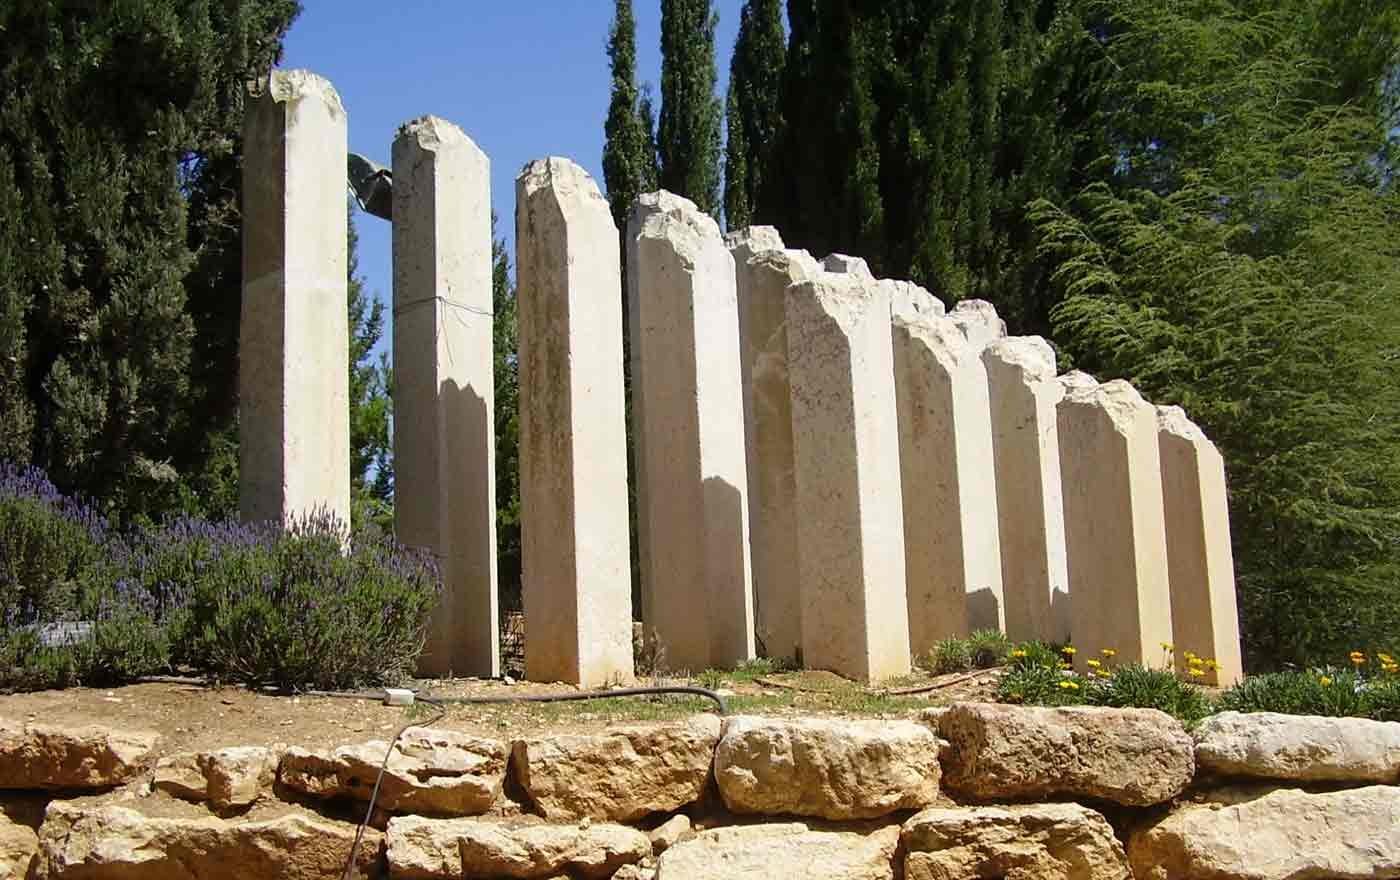 Die Tiroler Delegation wird auch das Shoah-Denkmal Yad Vashem besuchen. Foto: wikimedia/Avishai Teicher